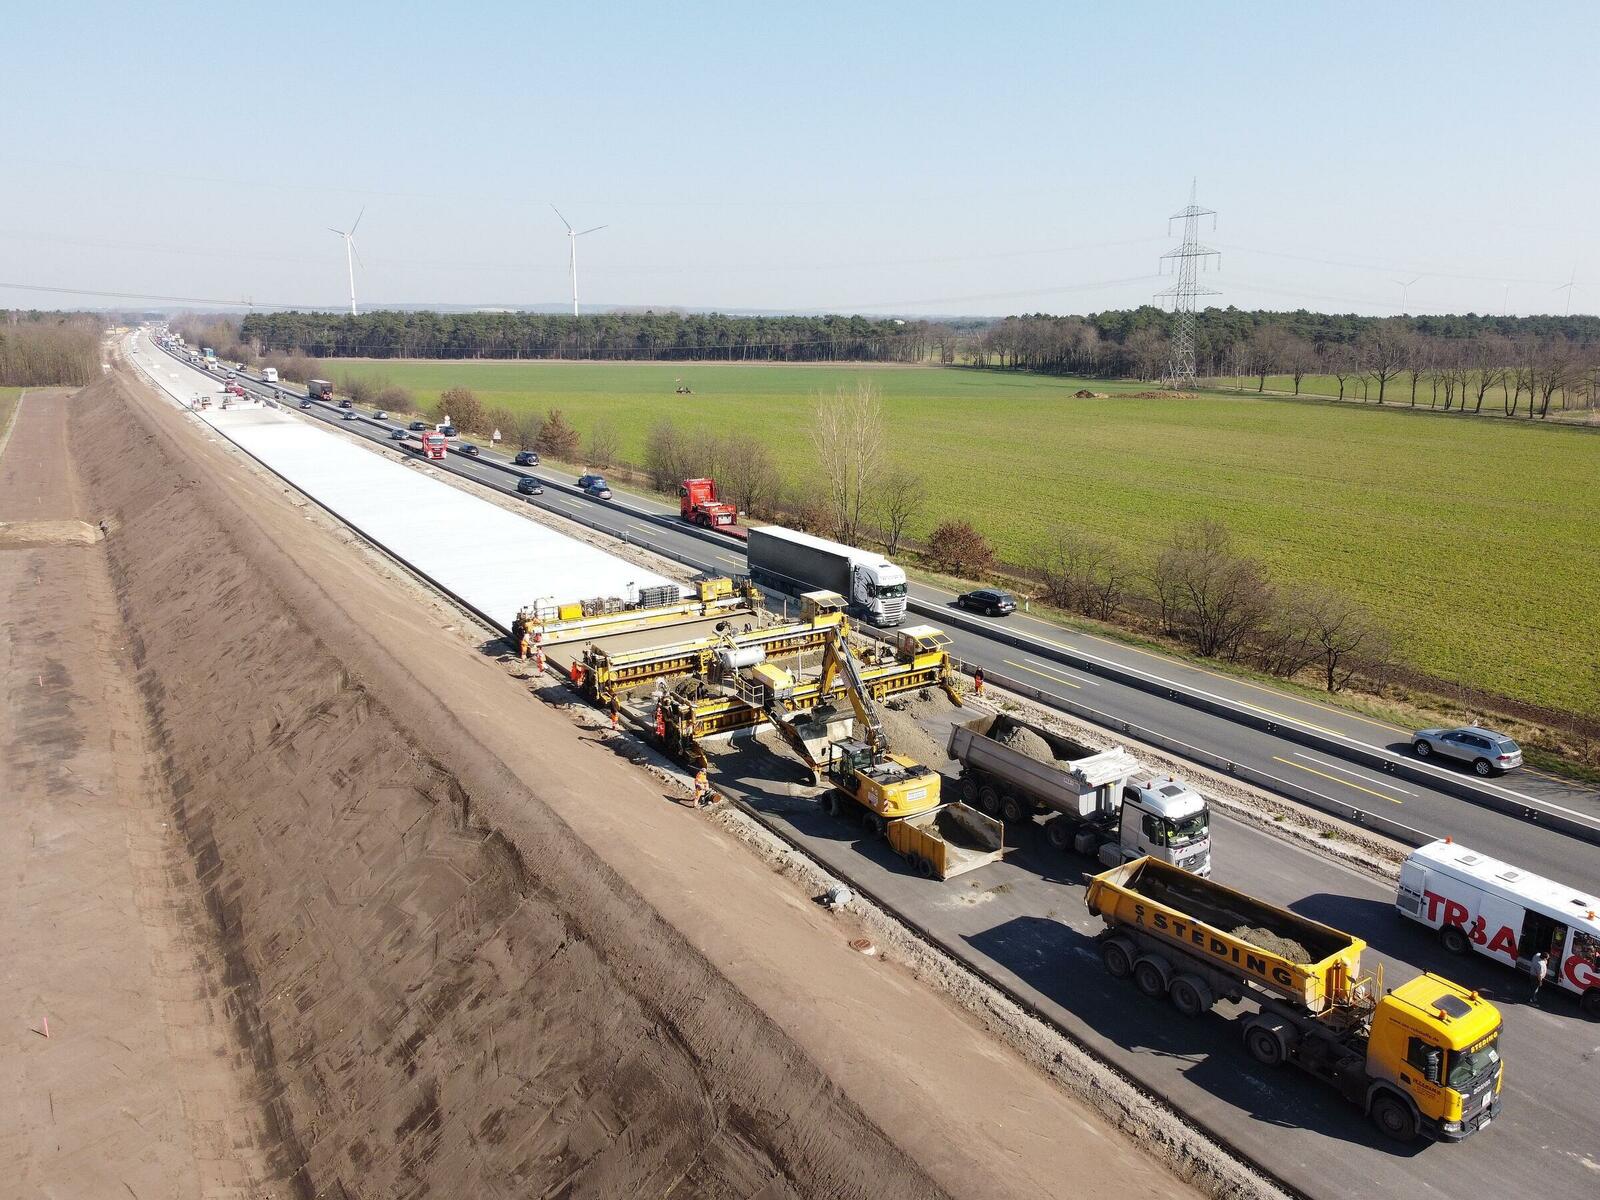 Strabag erhielt in Arbeitsgemeinschaft den Zuschlag für den sechsspurigen Ausbau der BAB 1 auf einer Strecke von knapp 30 km zwischen Lohne und Bramsche in Niedersachsen.